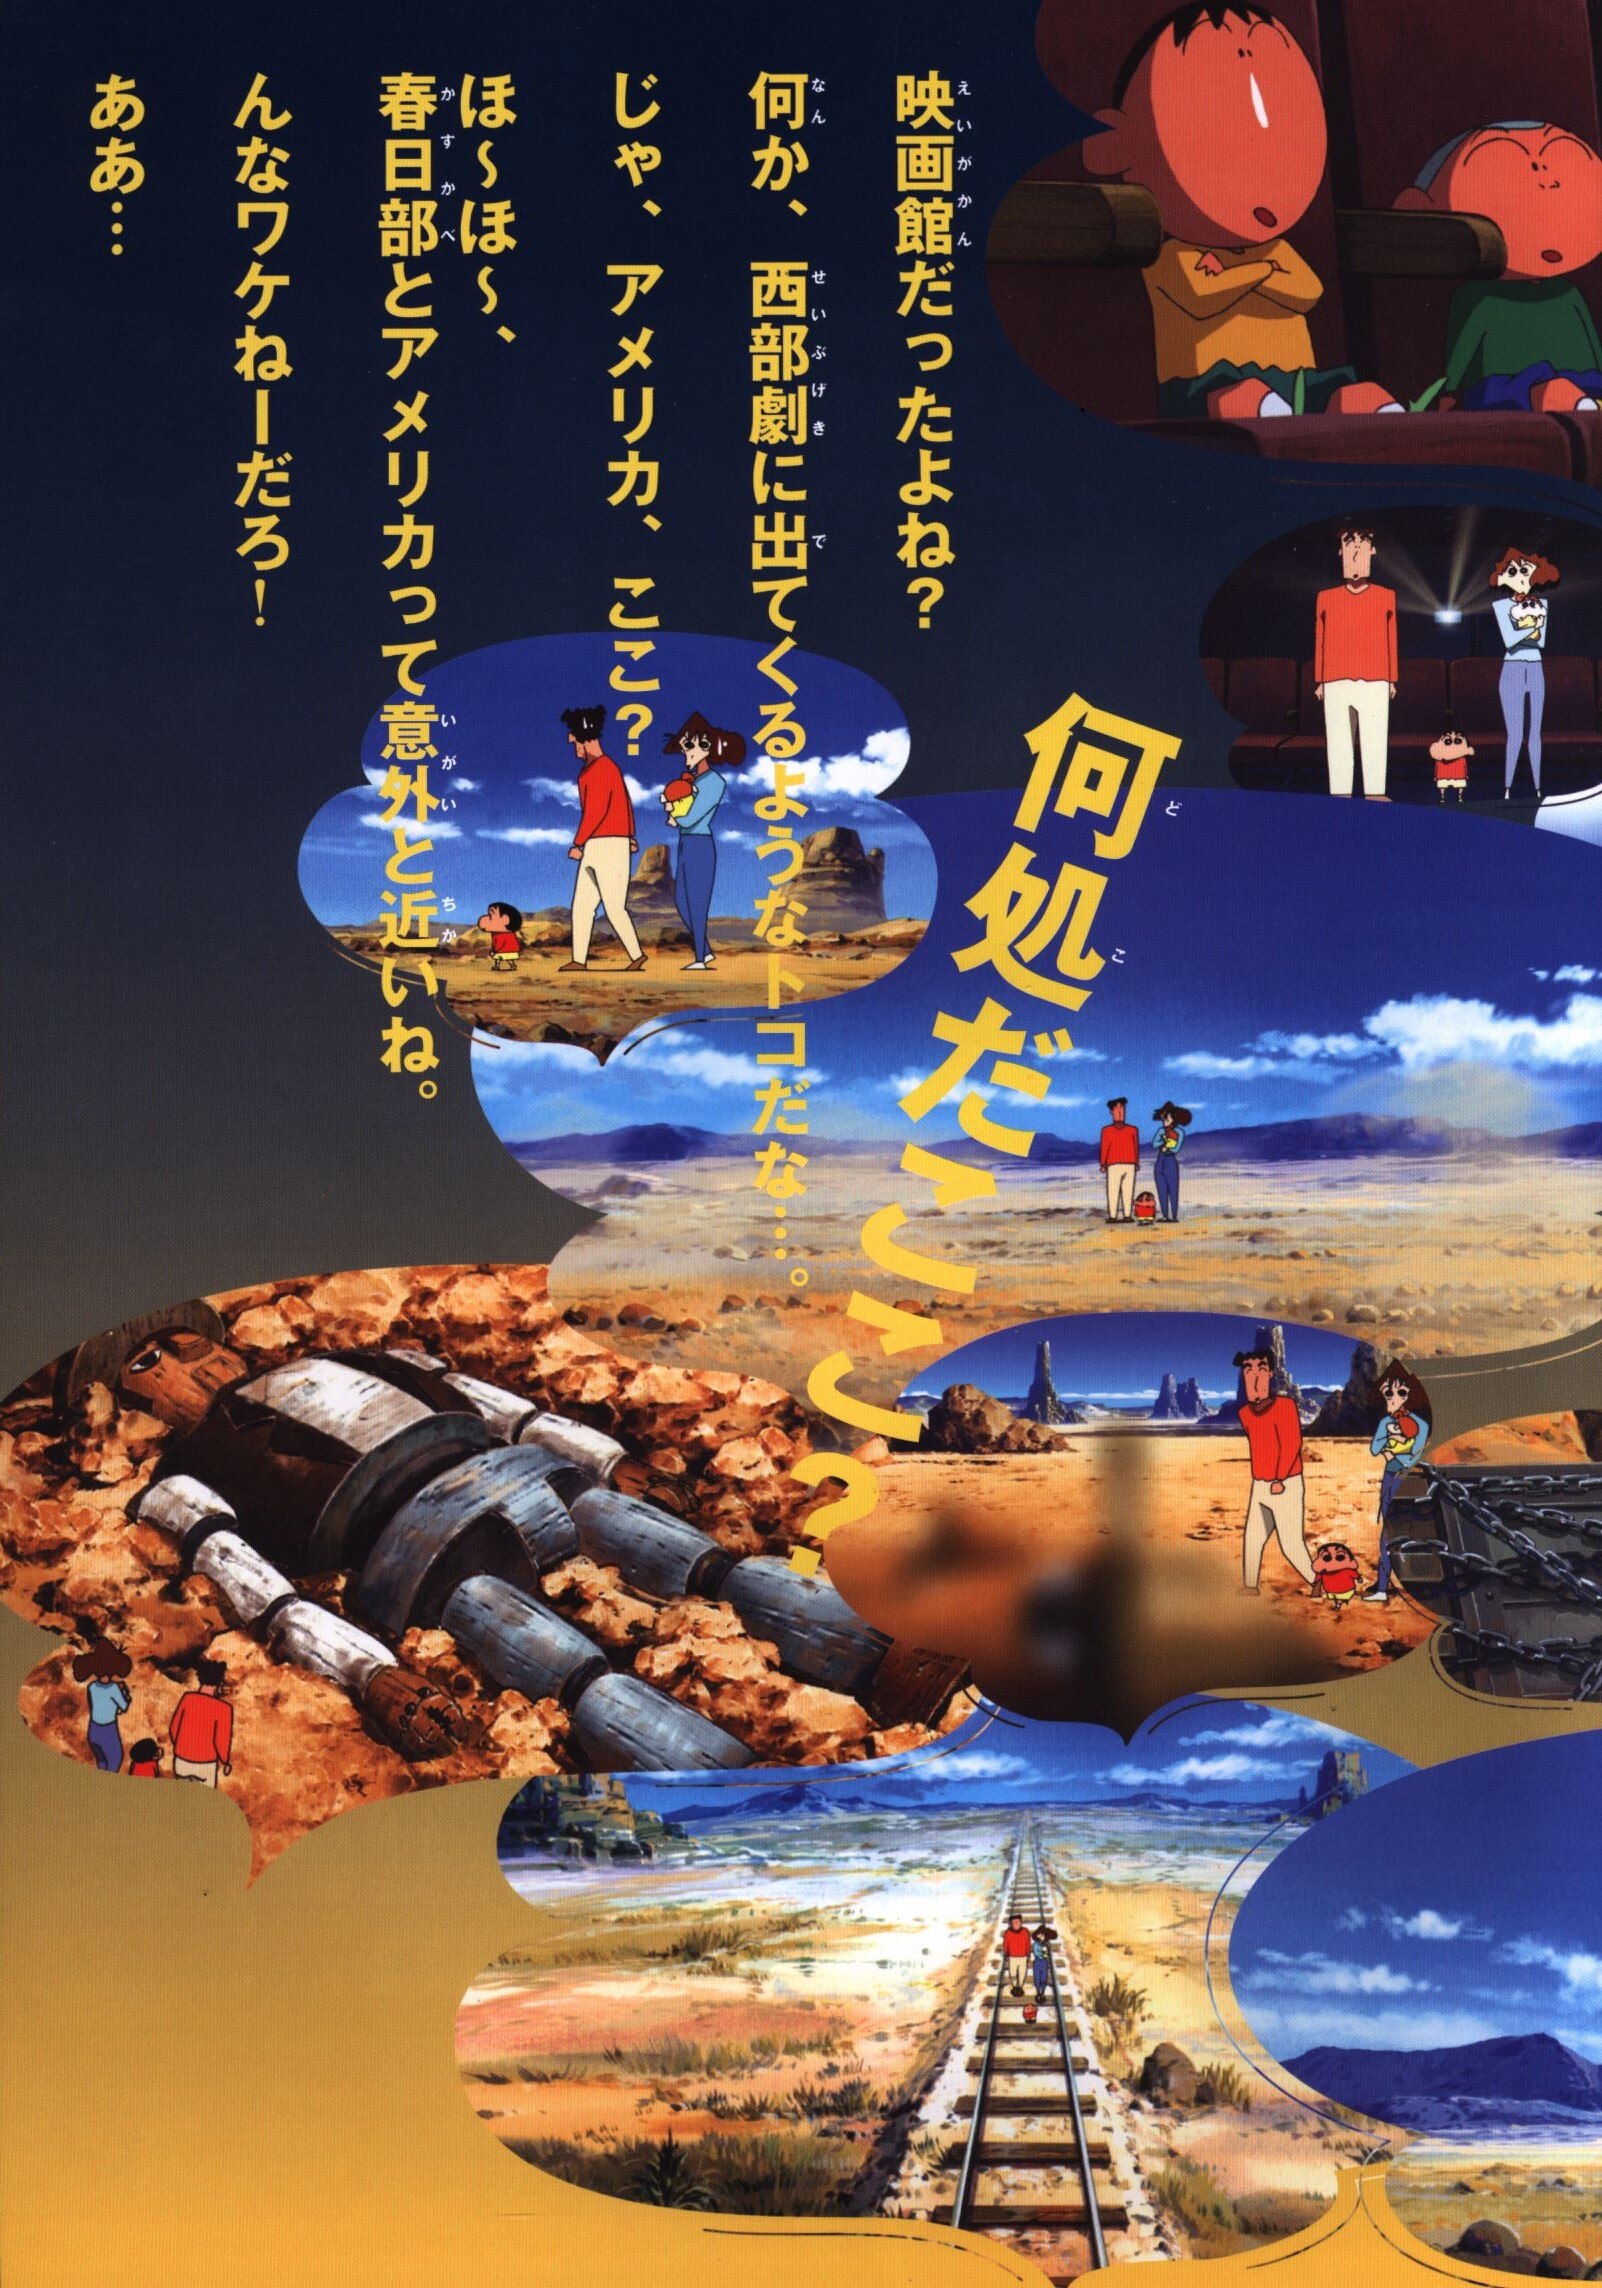 東宝 パンフレット クレヨンしんちゃん 嵐を呼ぶ 夕陽のカスカベボーイズ 2004年